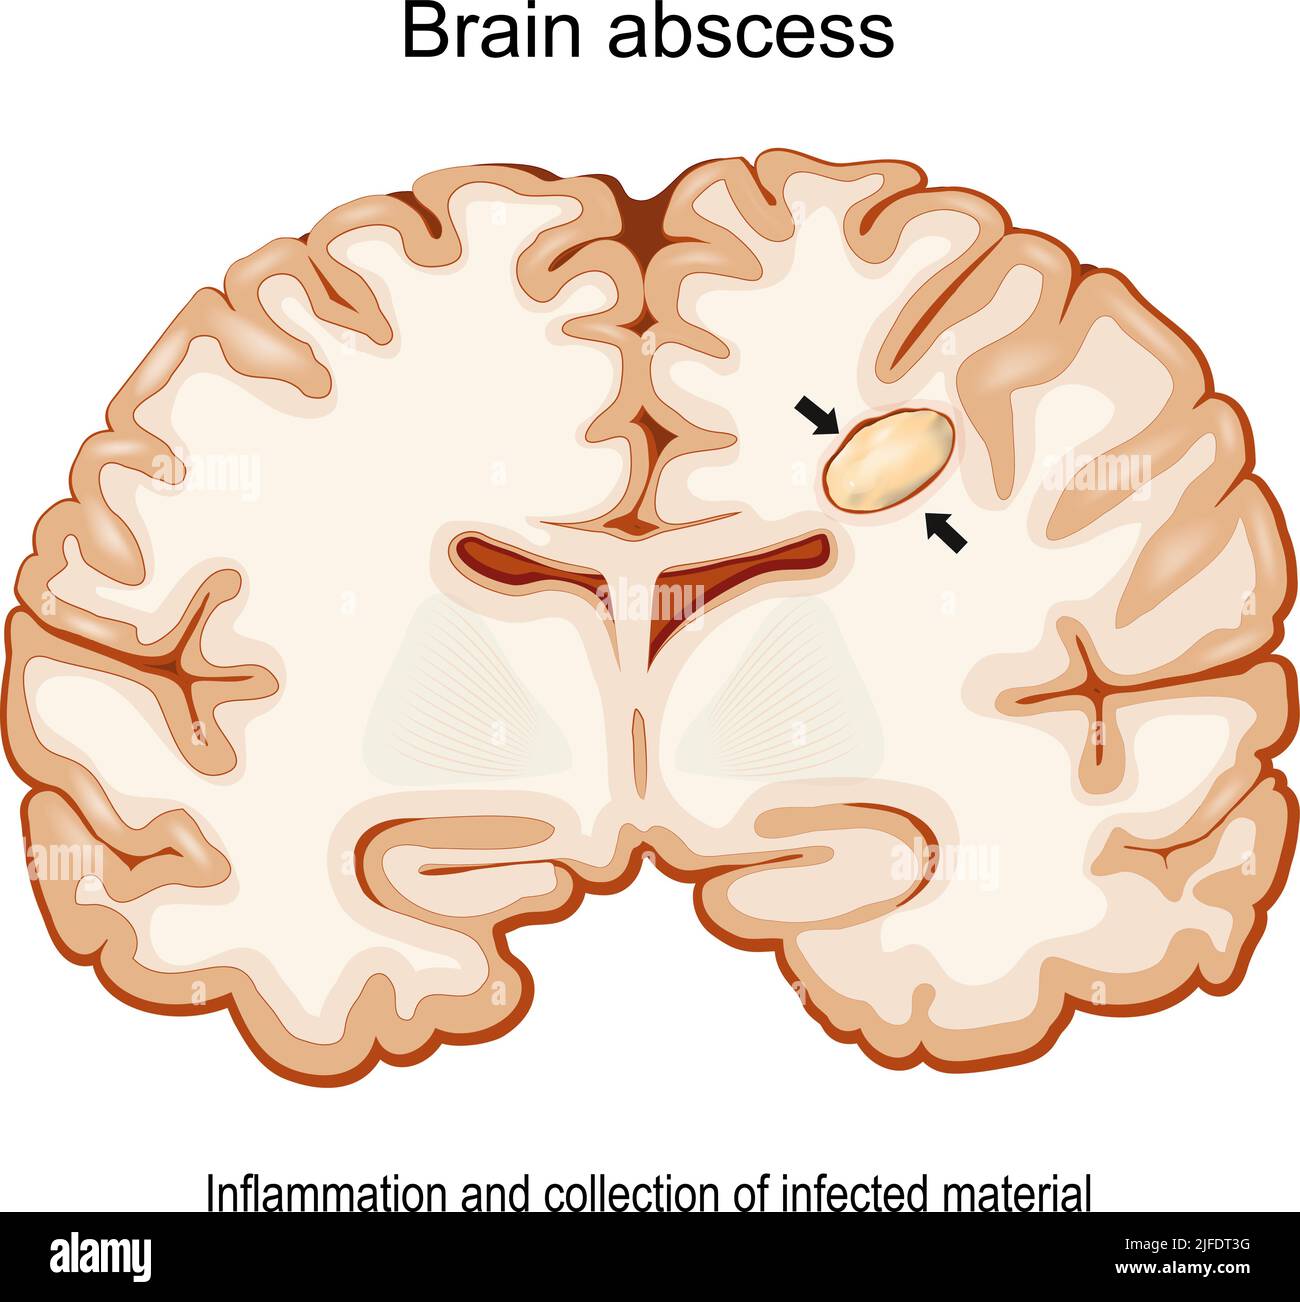 Hirnabszess. Zerebraler Abszess. Infektionskrankheiten des Gehirns. Querschnitt eines menschlichen Gehirns mit der intrazerebralen Eitersammlung. Vektorposter Stock Vektor